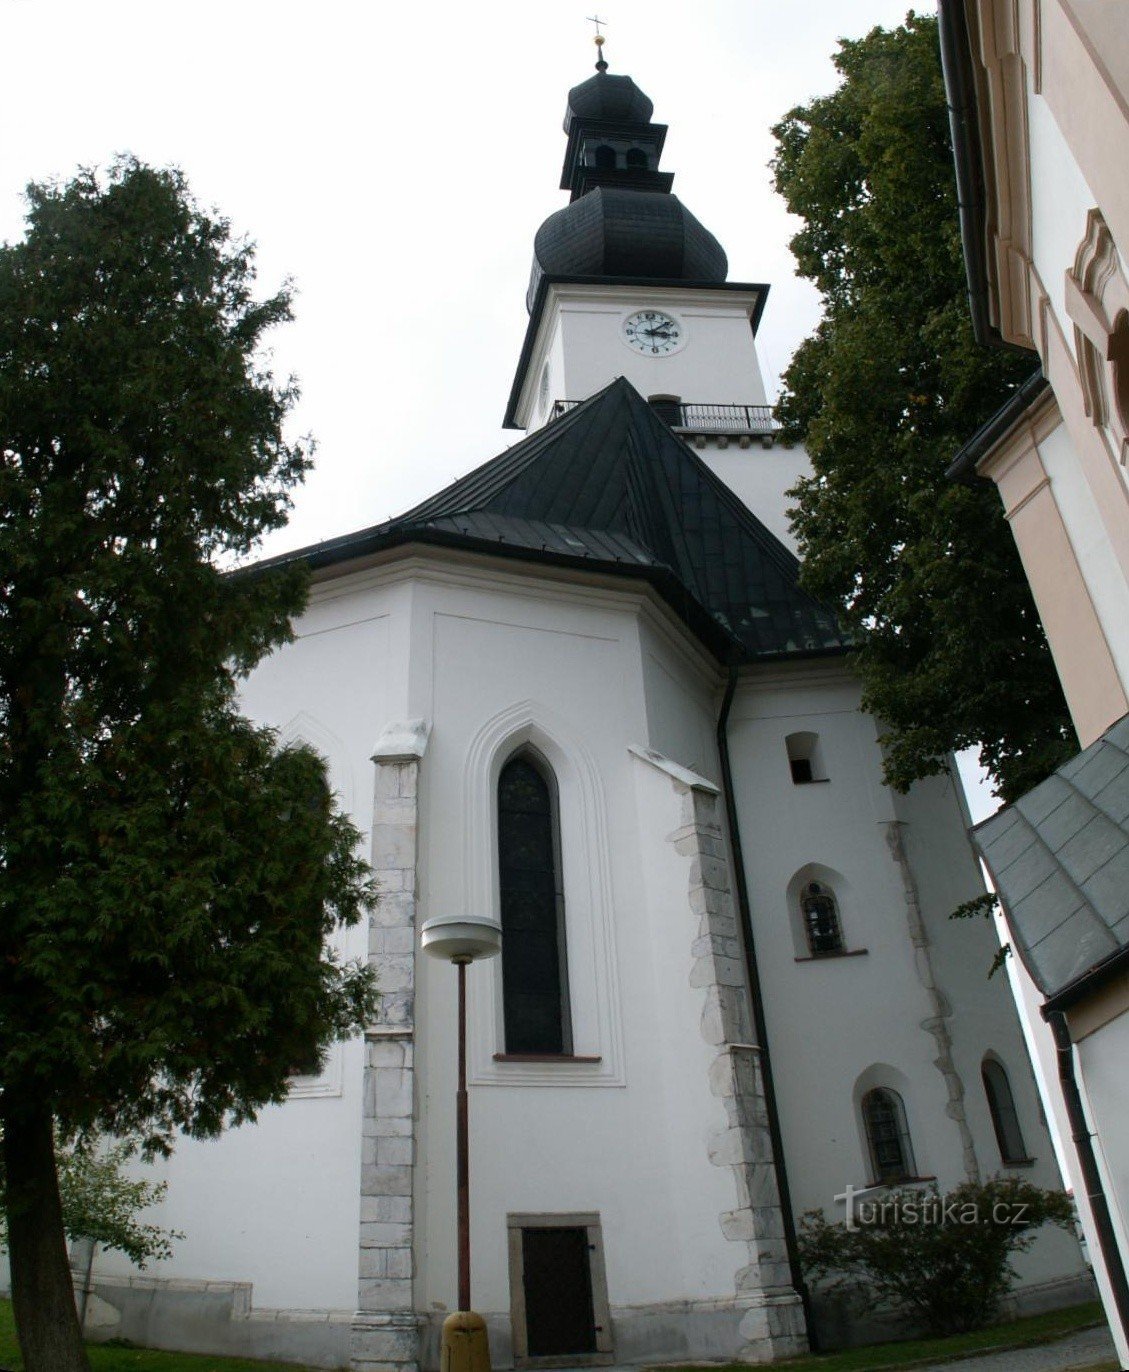 Cerkev sv. Prokopij